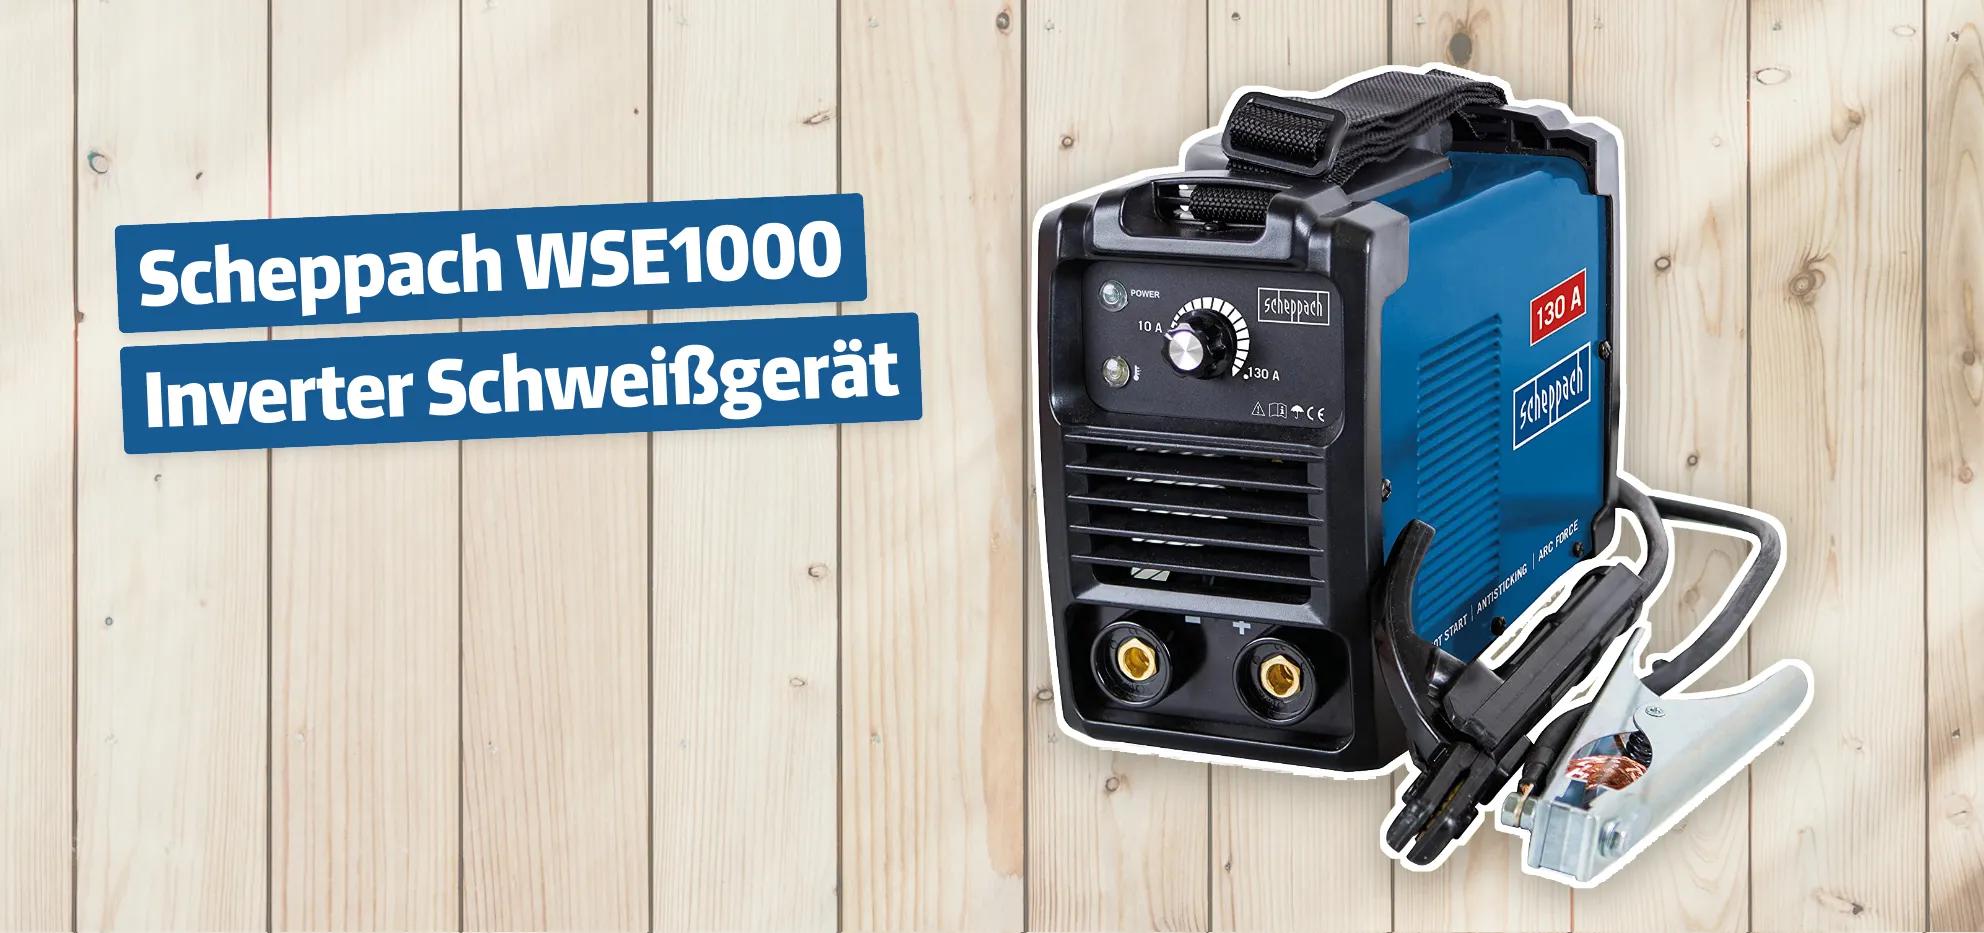 Scheppach WSE1000 Inverter Schweißgerät